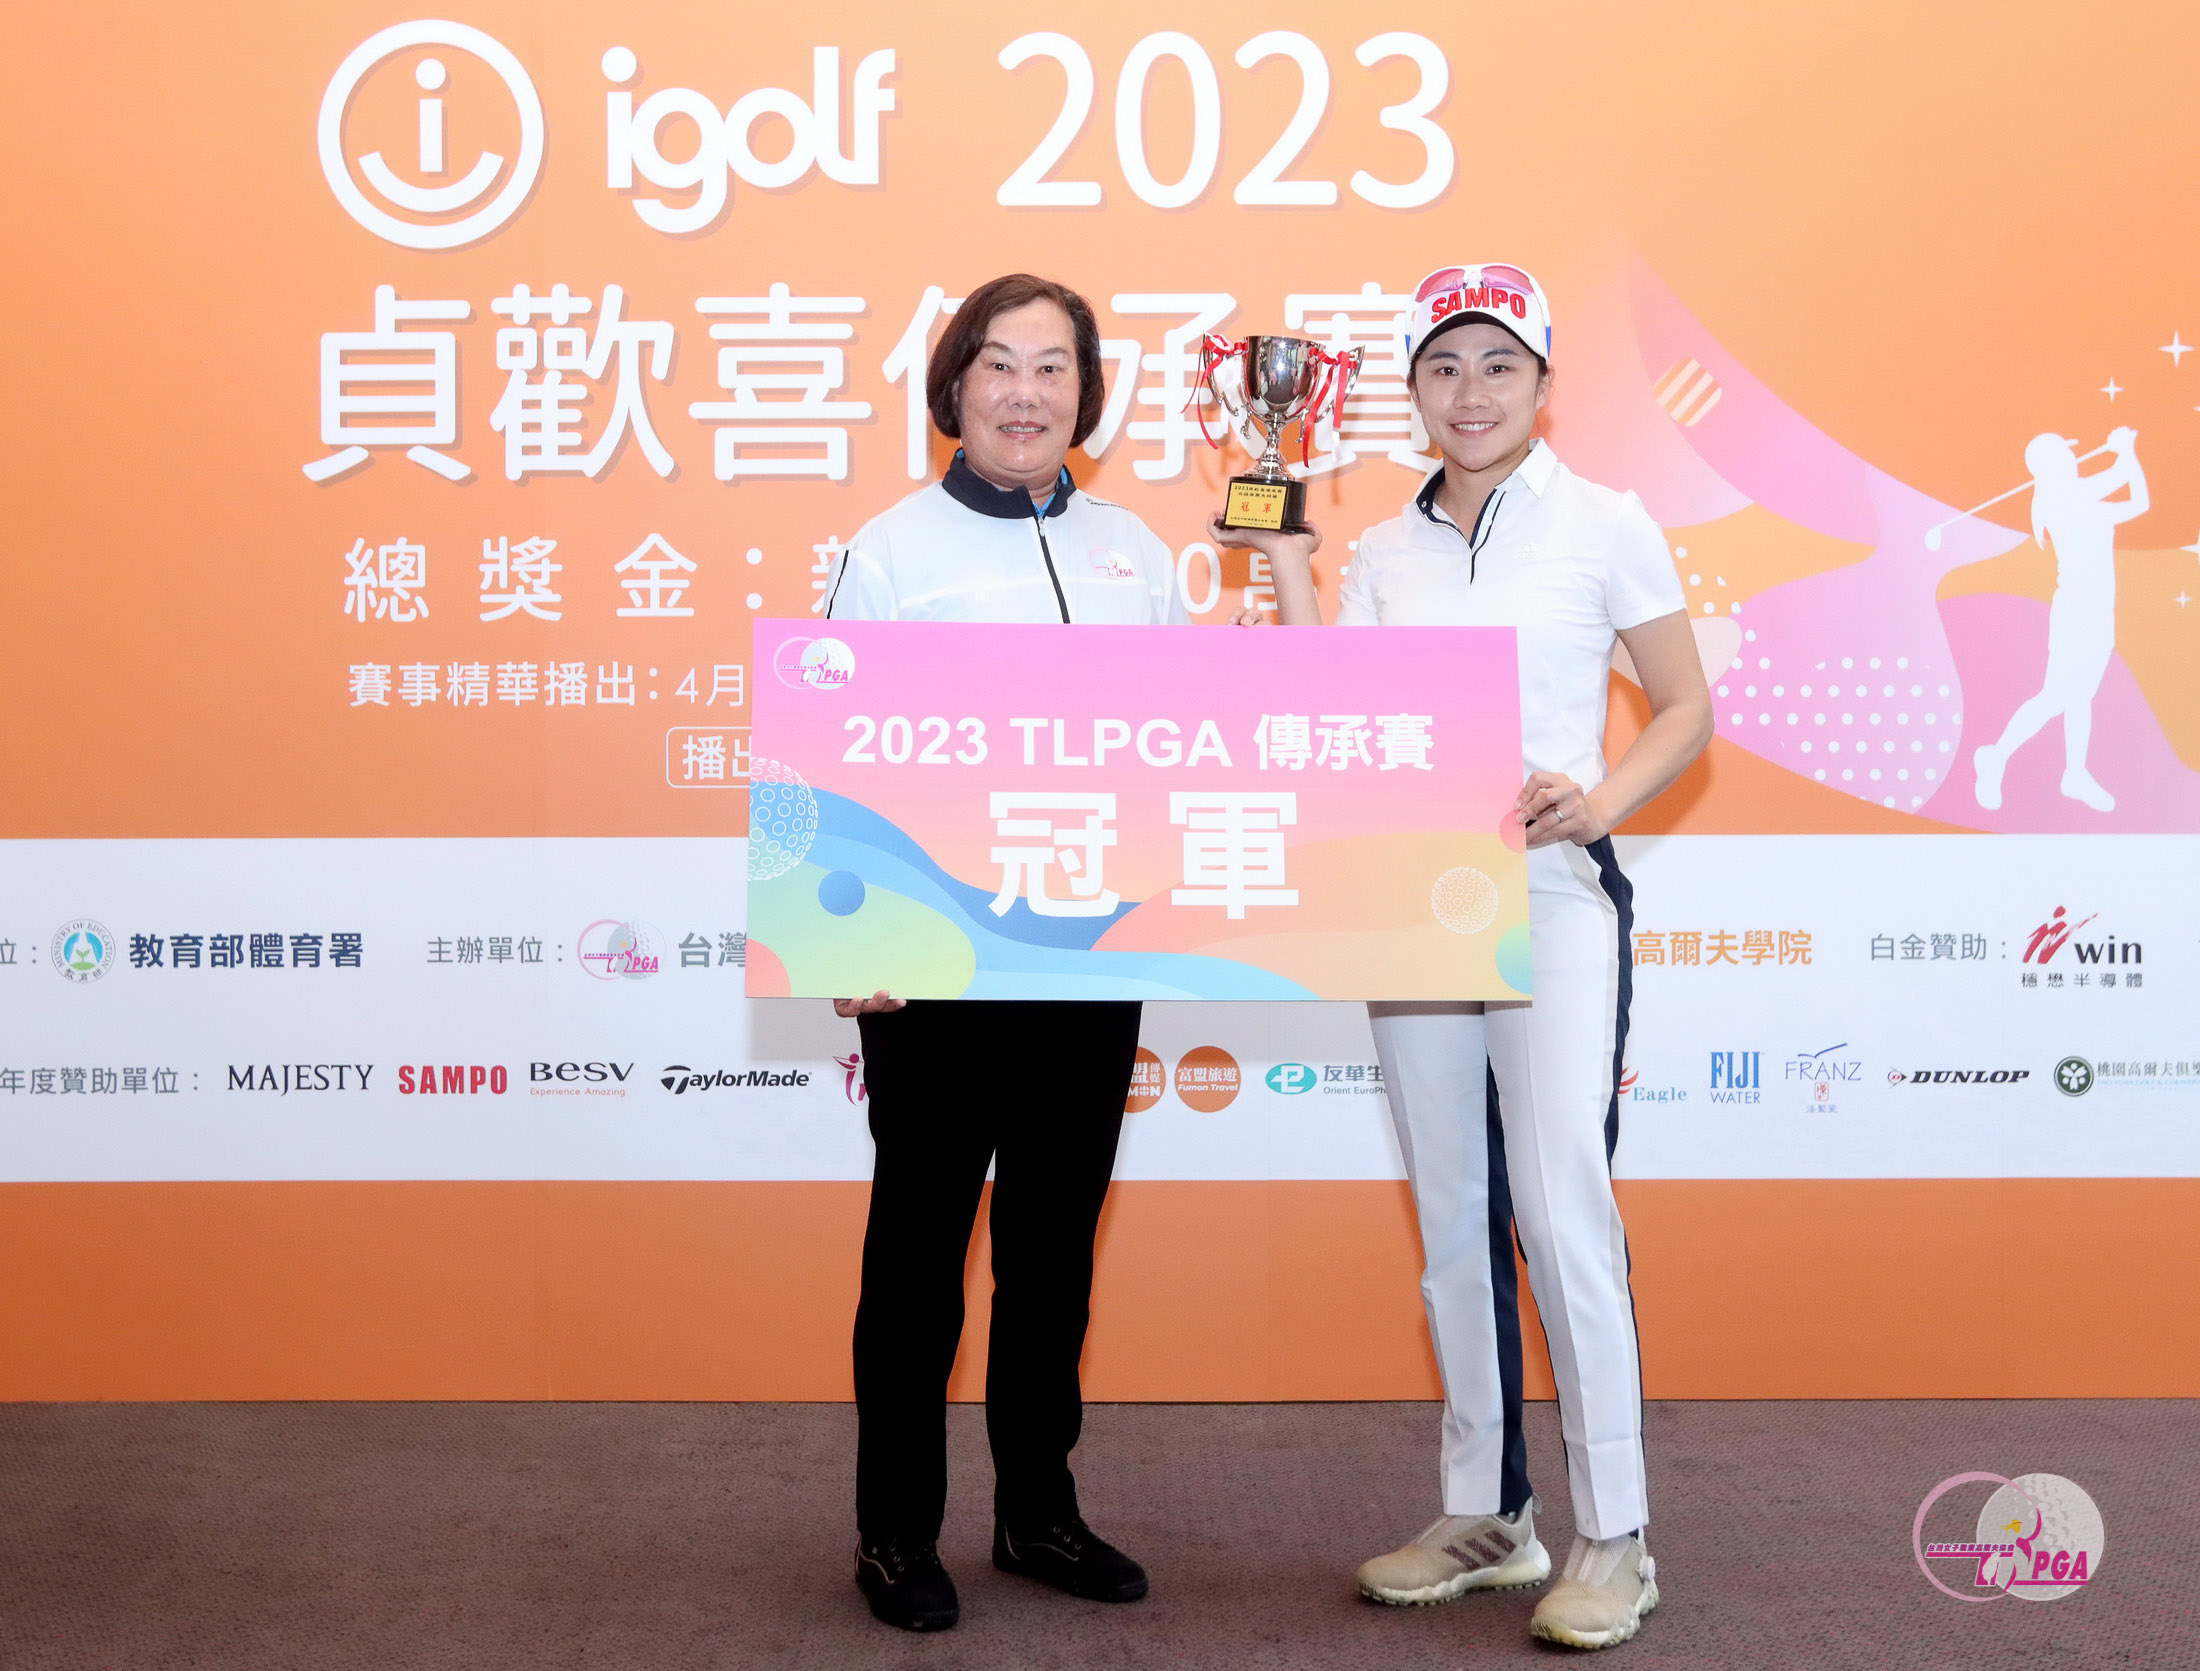 台灣女子職業高爾夫協會理事長劉依貞（左）頒冠軍盃給張瑄屏。鍾豐榮攝影